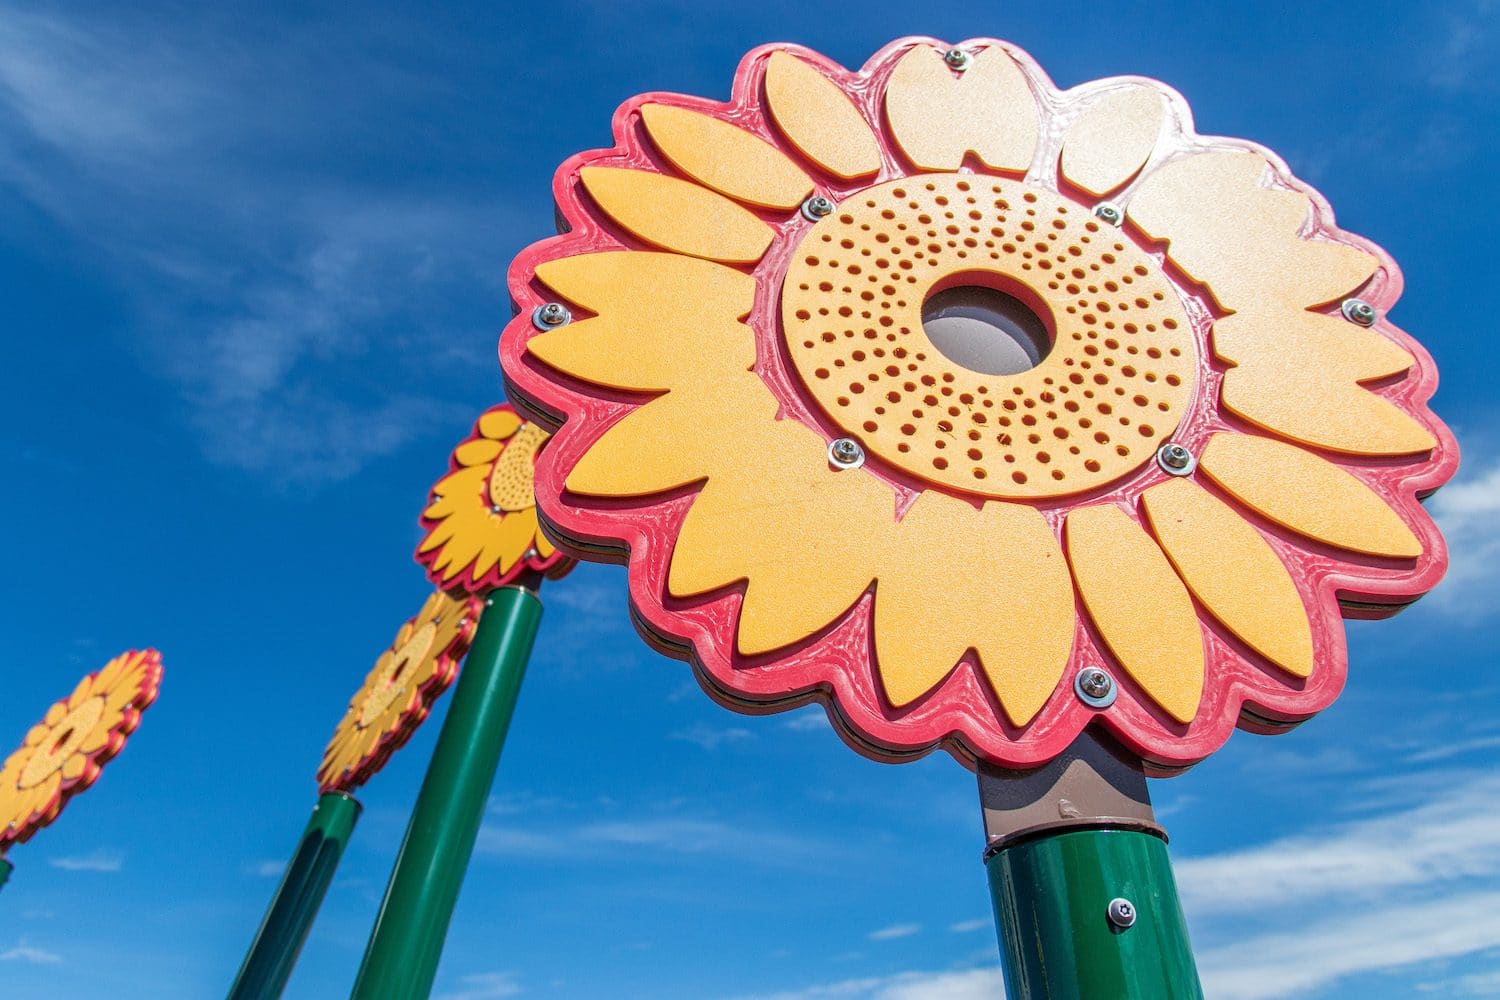 Sunflower details